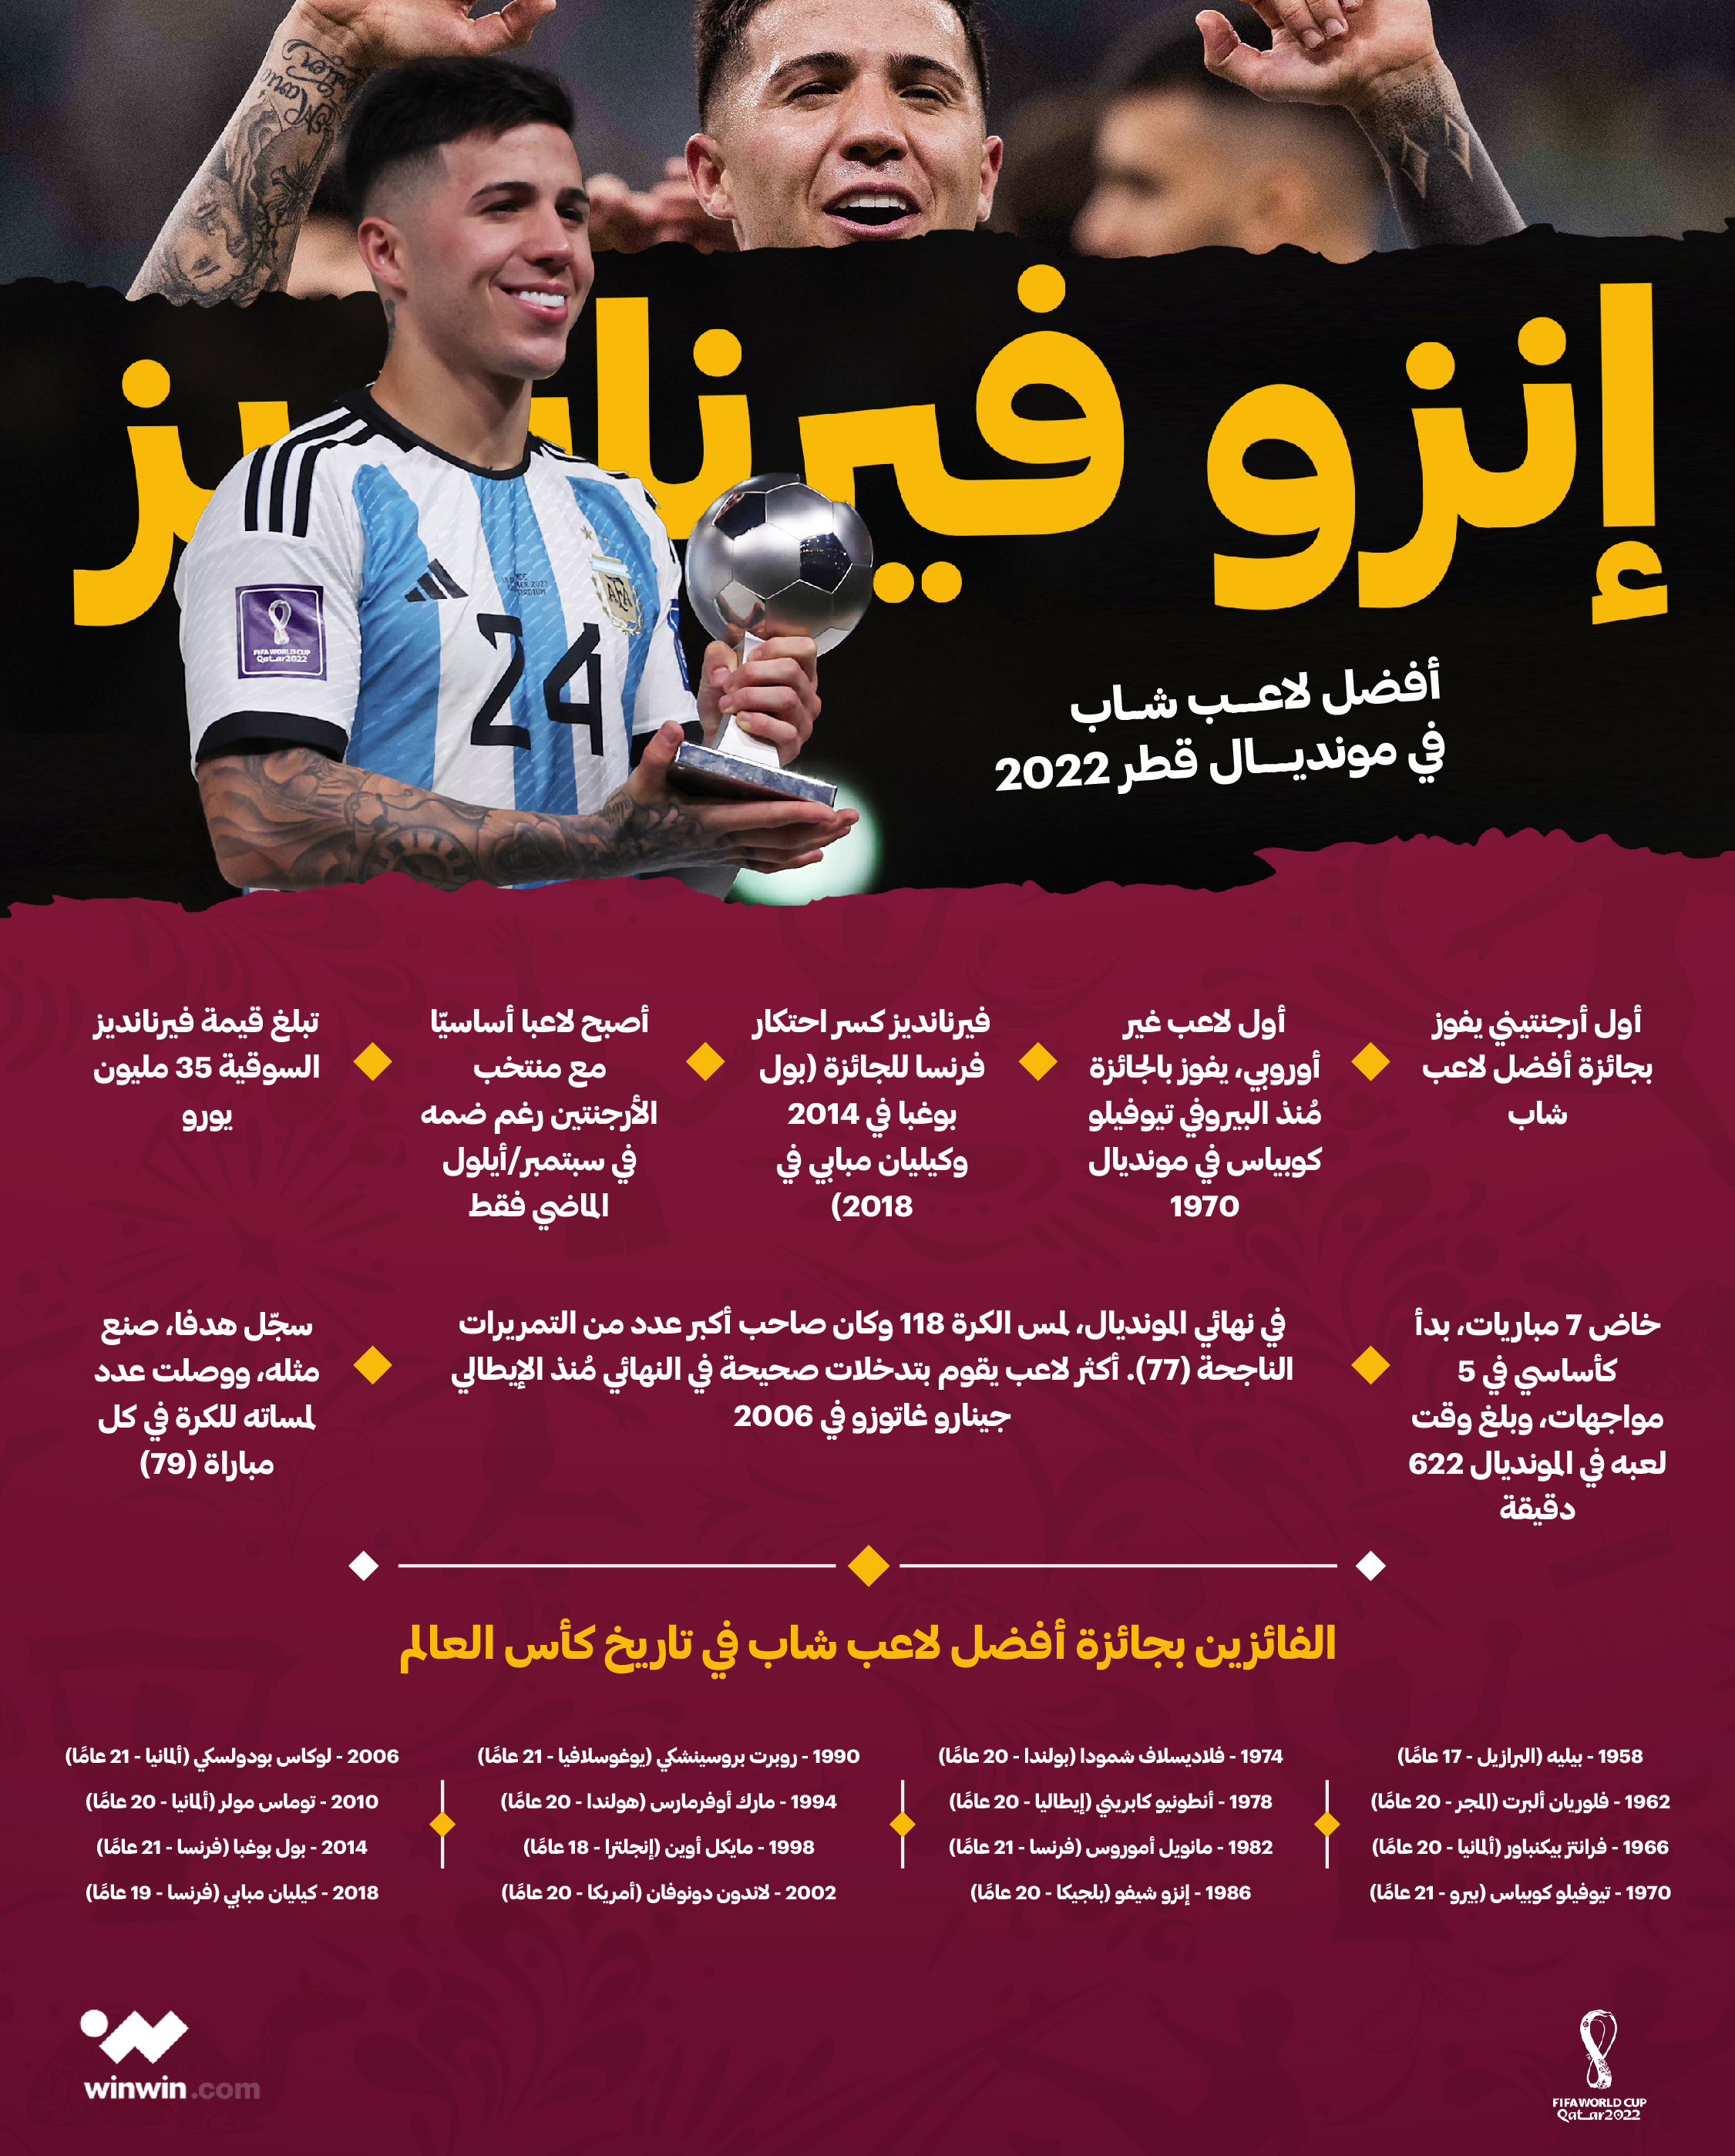 أفضل لاعب شاب في مونديال قطر 2022